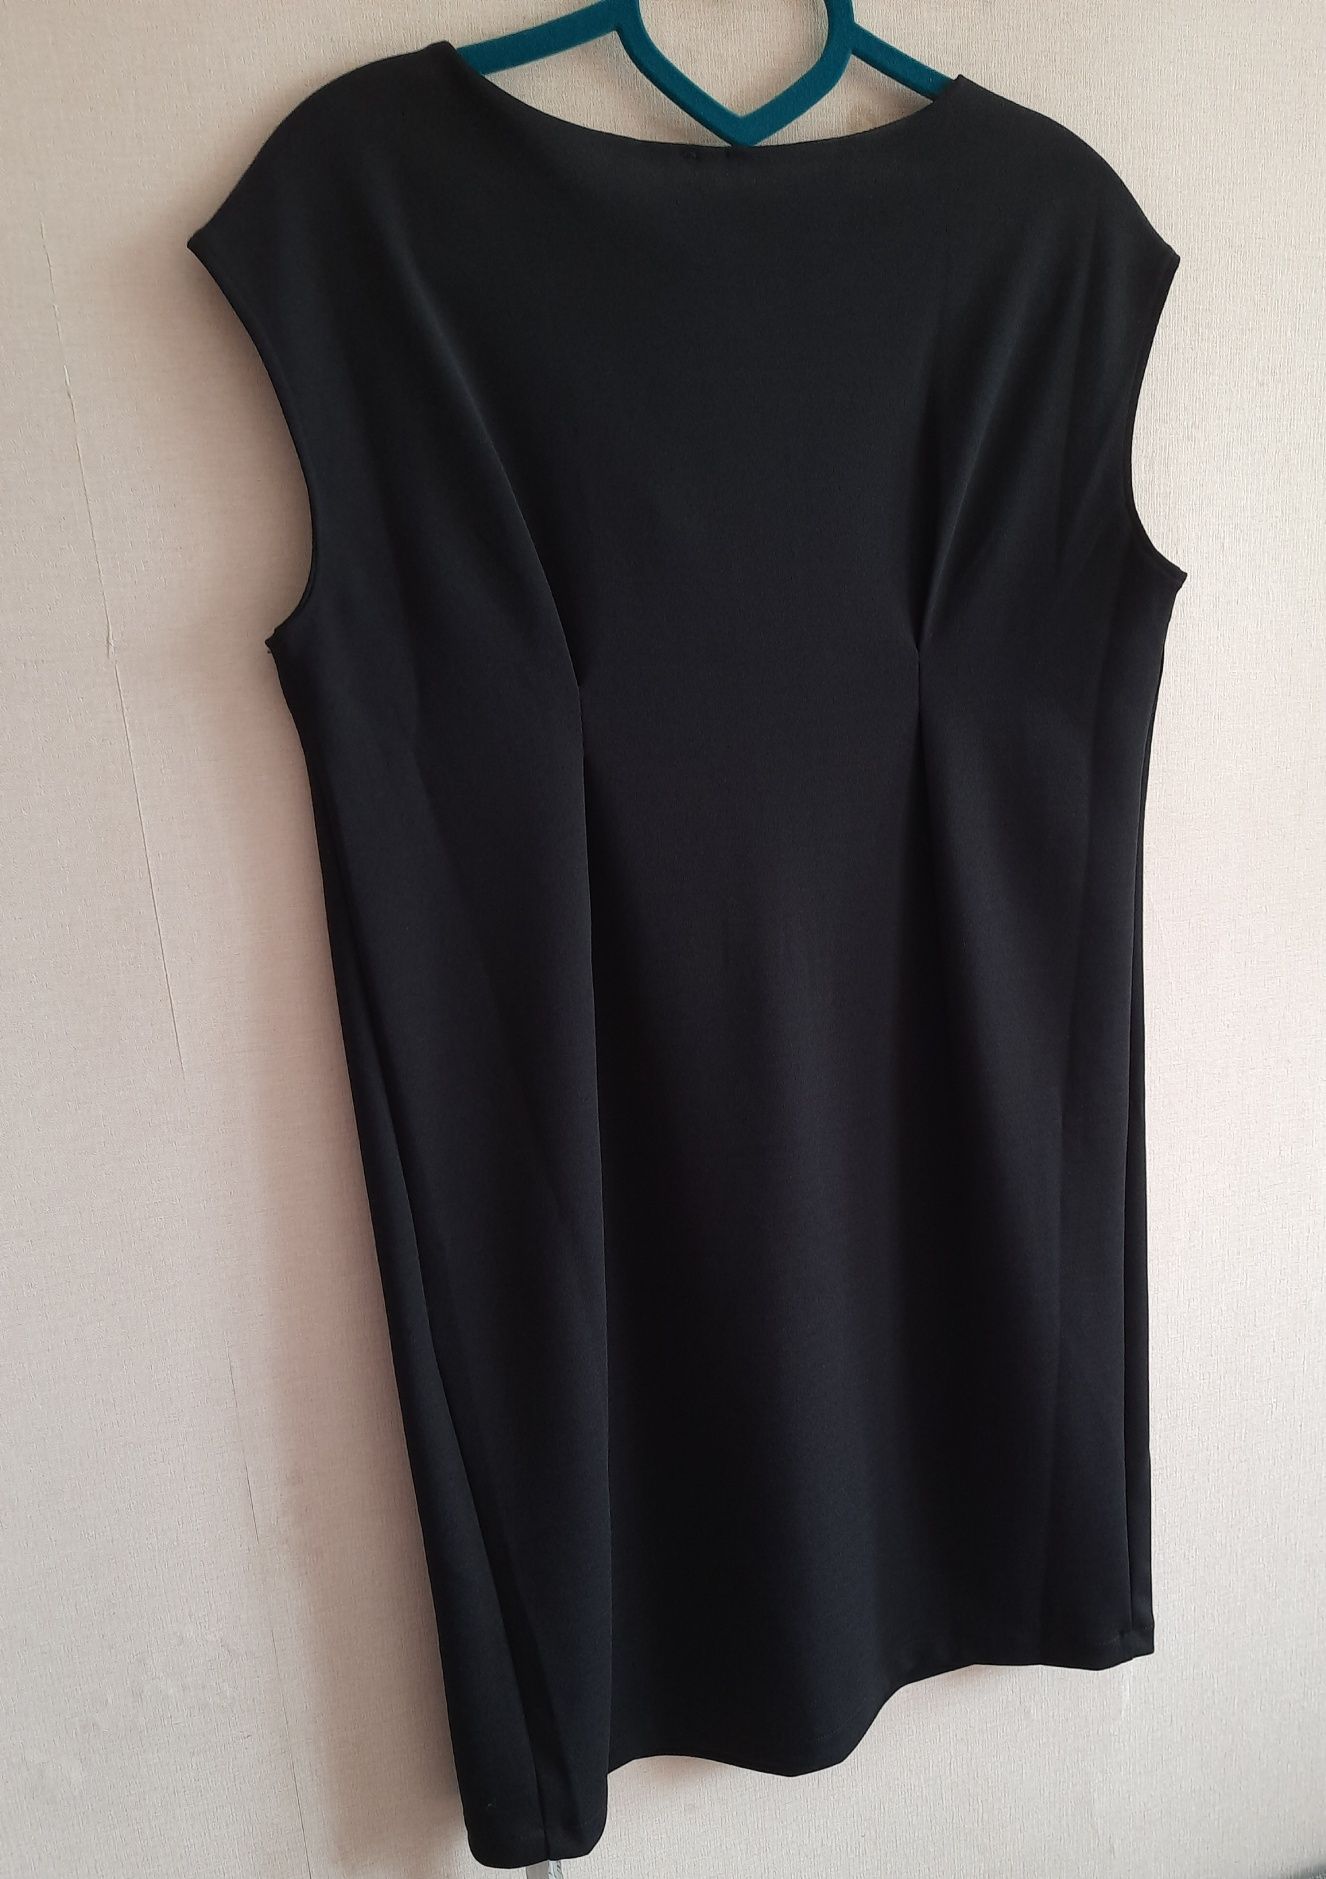 Чёрное платье Yamamay. Новое. Размер - L.